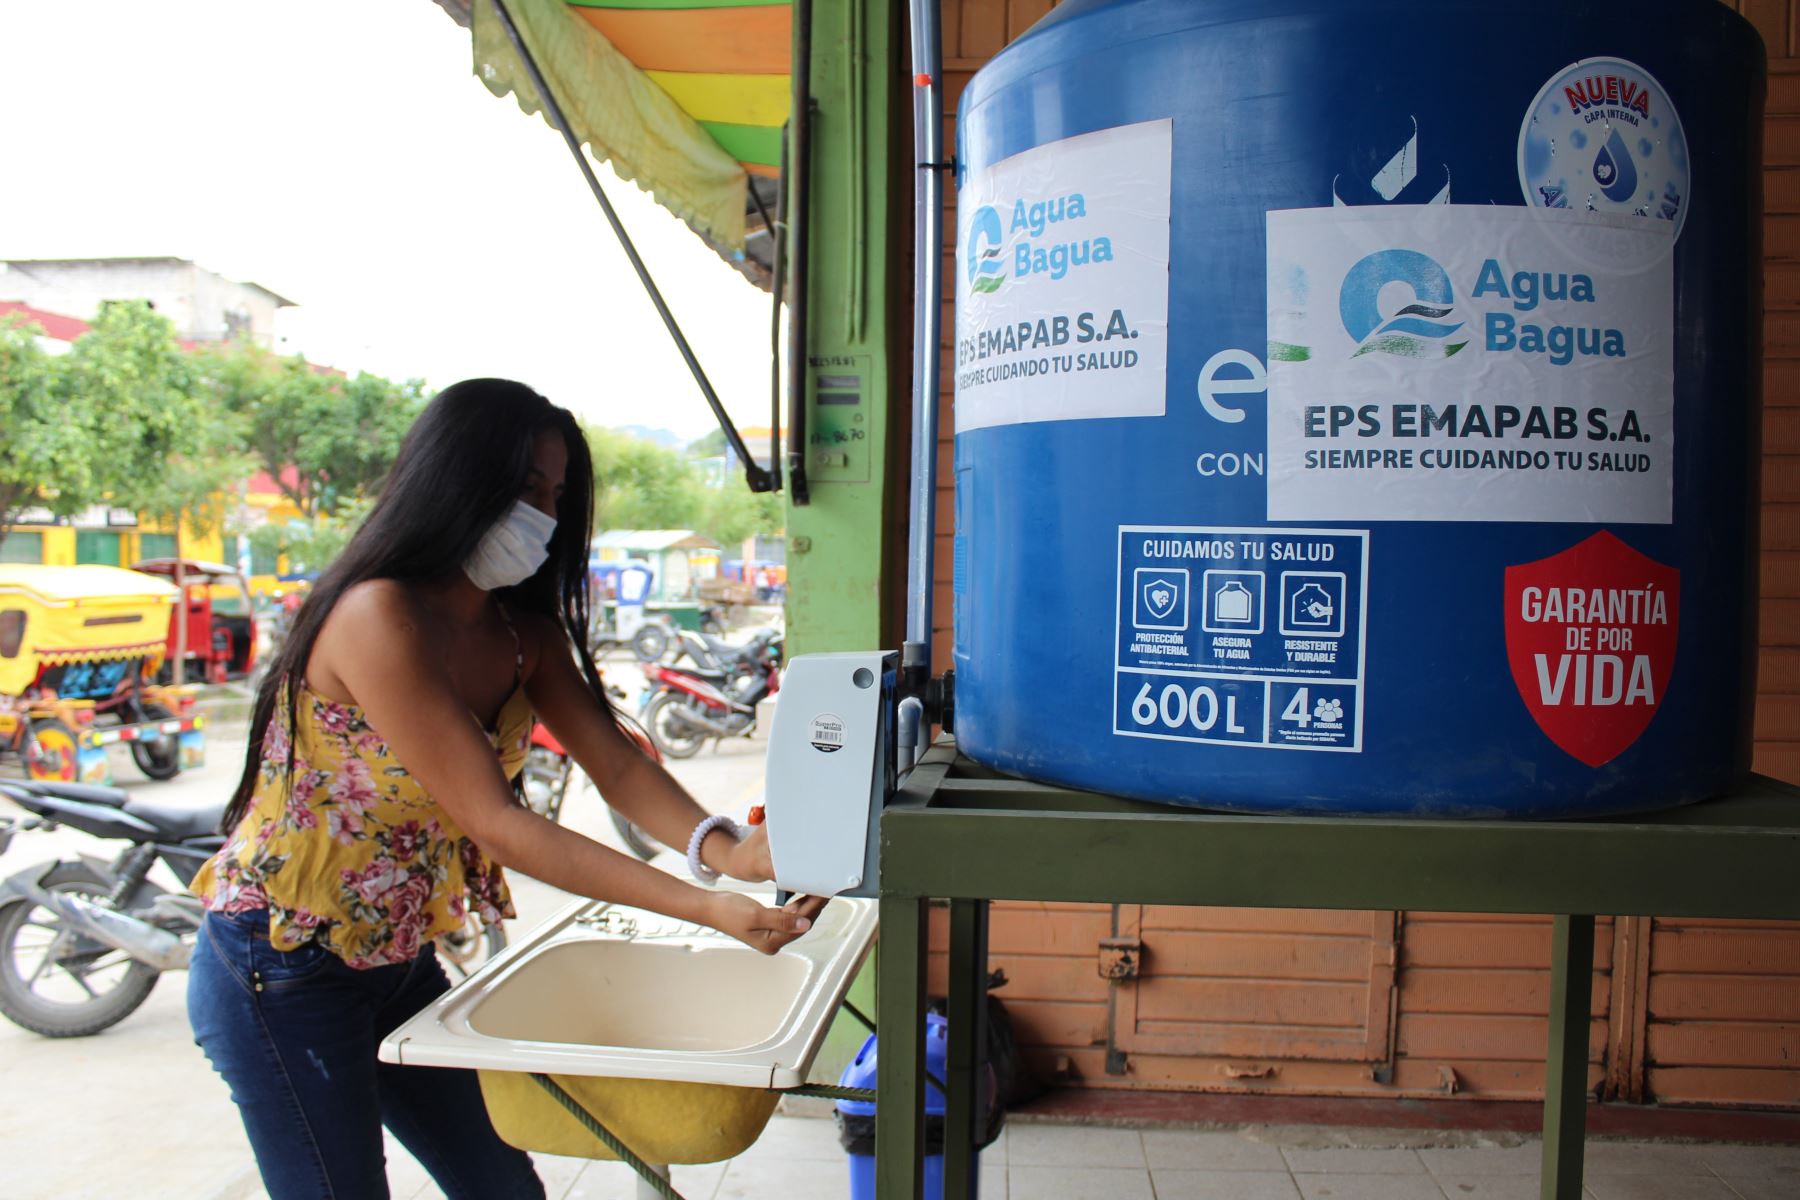 Empresas de Saneamiento instalan 24 lavamanos públicos en varias ciudades de cinco regiones para prevenir contagio de coronavirus. ANDINA/Difusión